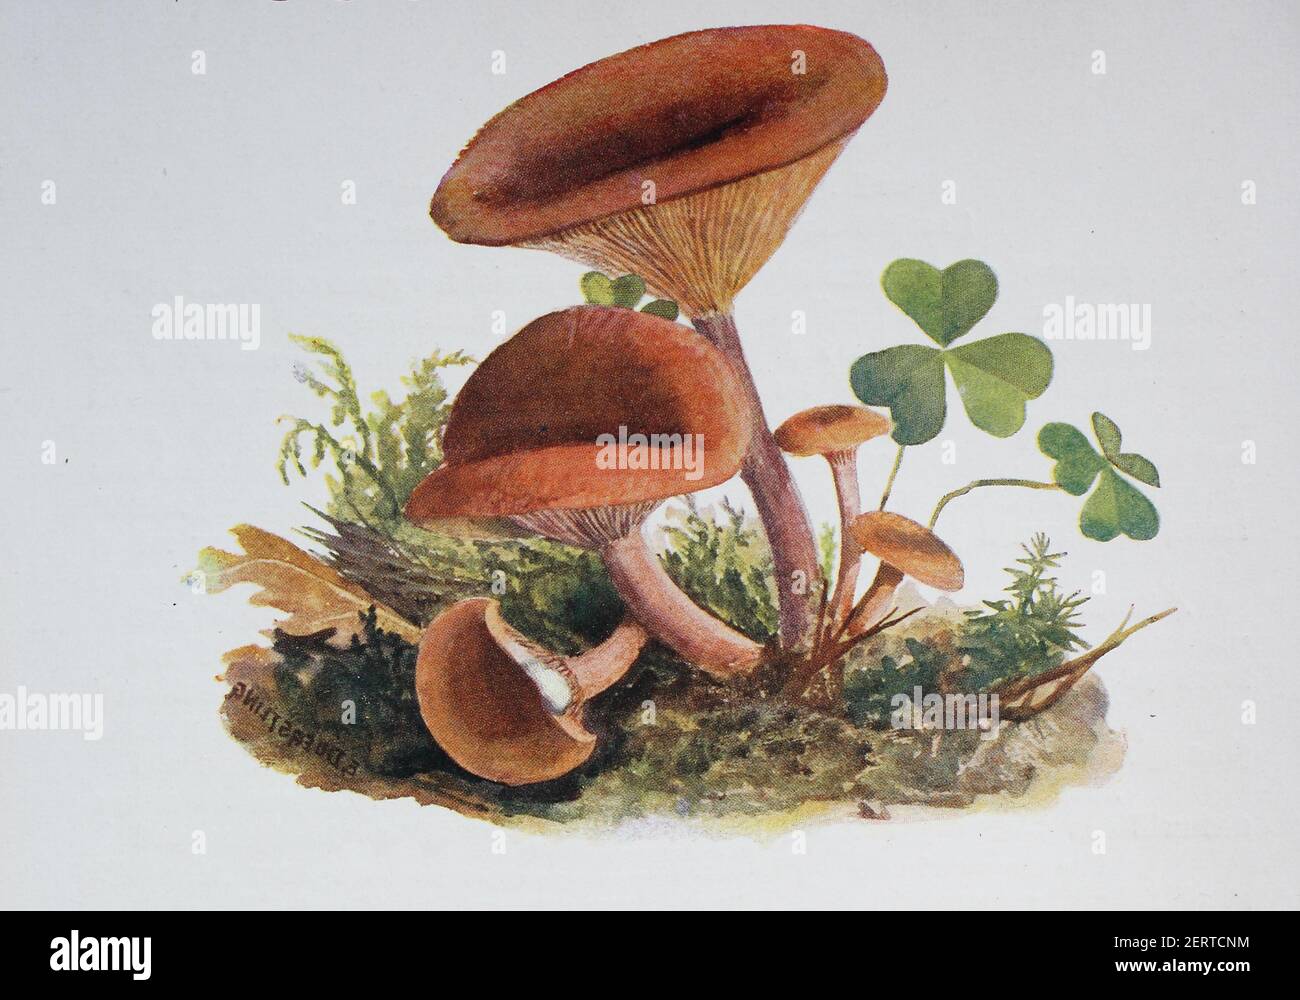 Lactarius subdulcis, comunemente noto come mite milkcap o cappuccio di faggio, è un fungo commestibile del genere Lactarius, riproduzione digitale di un'immagine di Emil Doerstling (1859-1940) Foto Stock